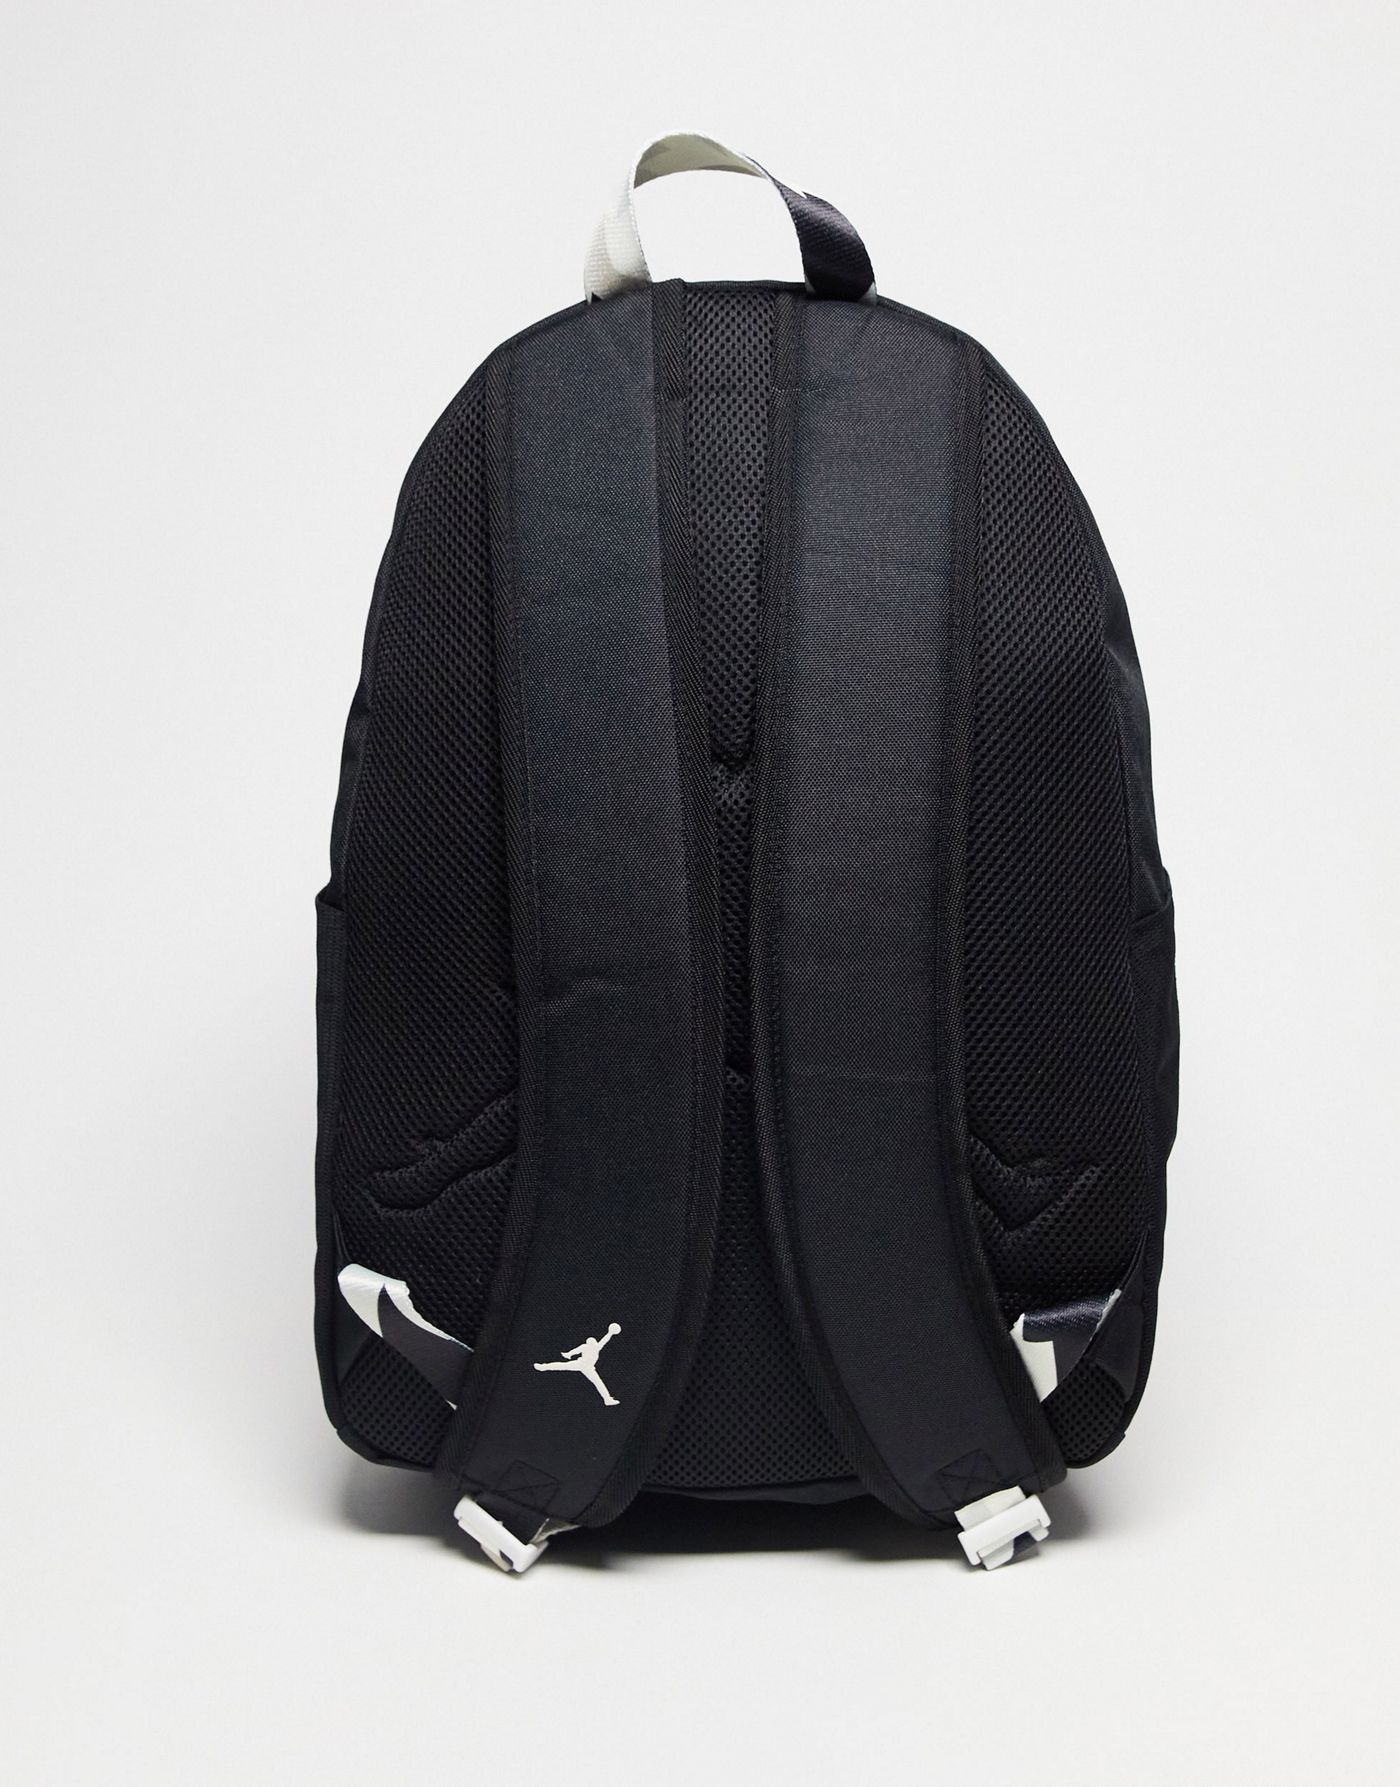 Jordan MVP backpack in black